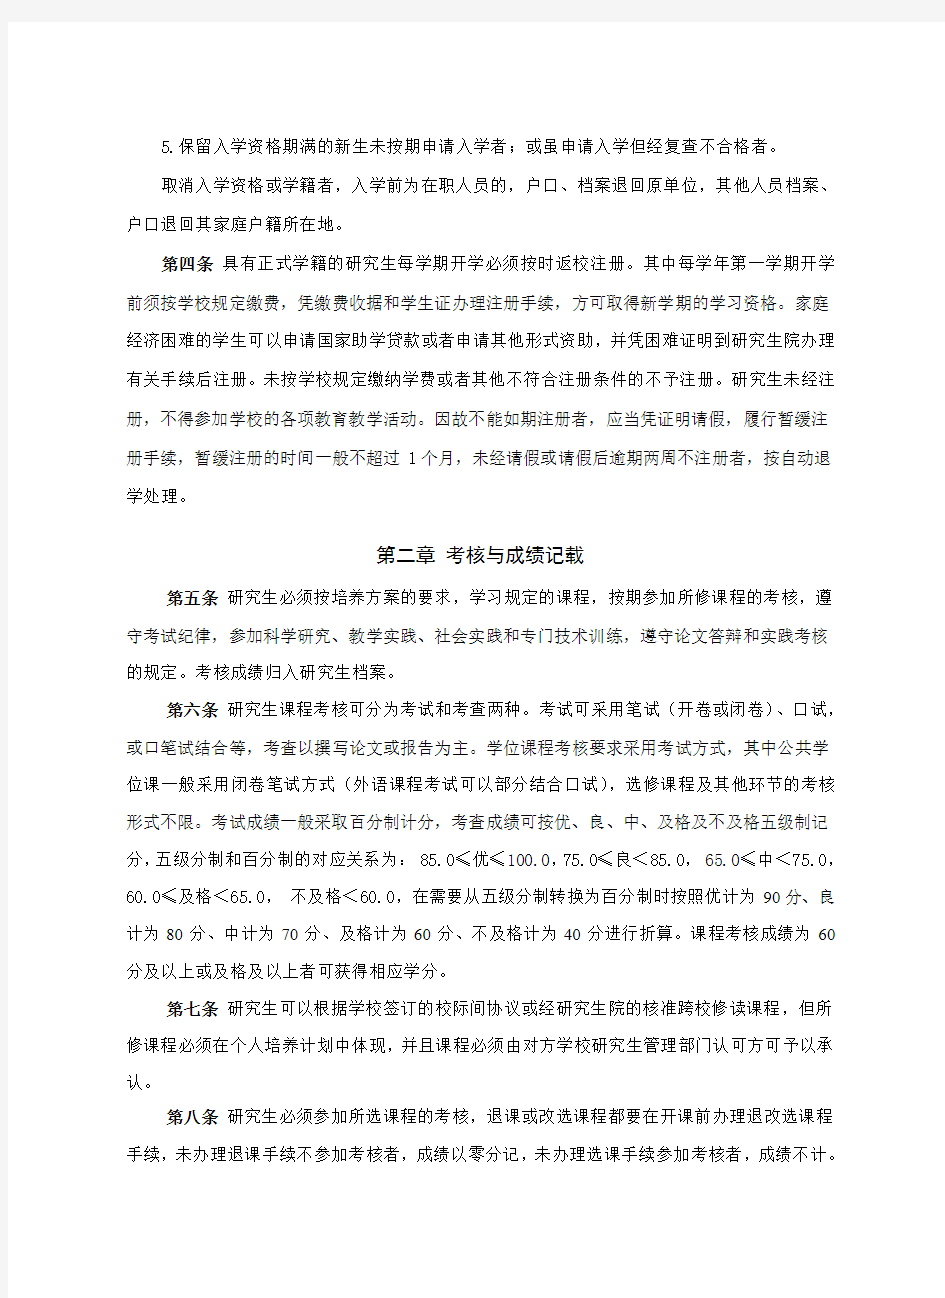 上海海洋大学研究生学籍管理规定